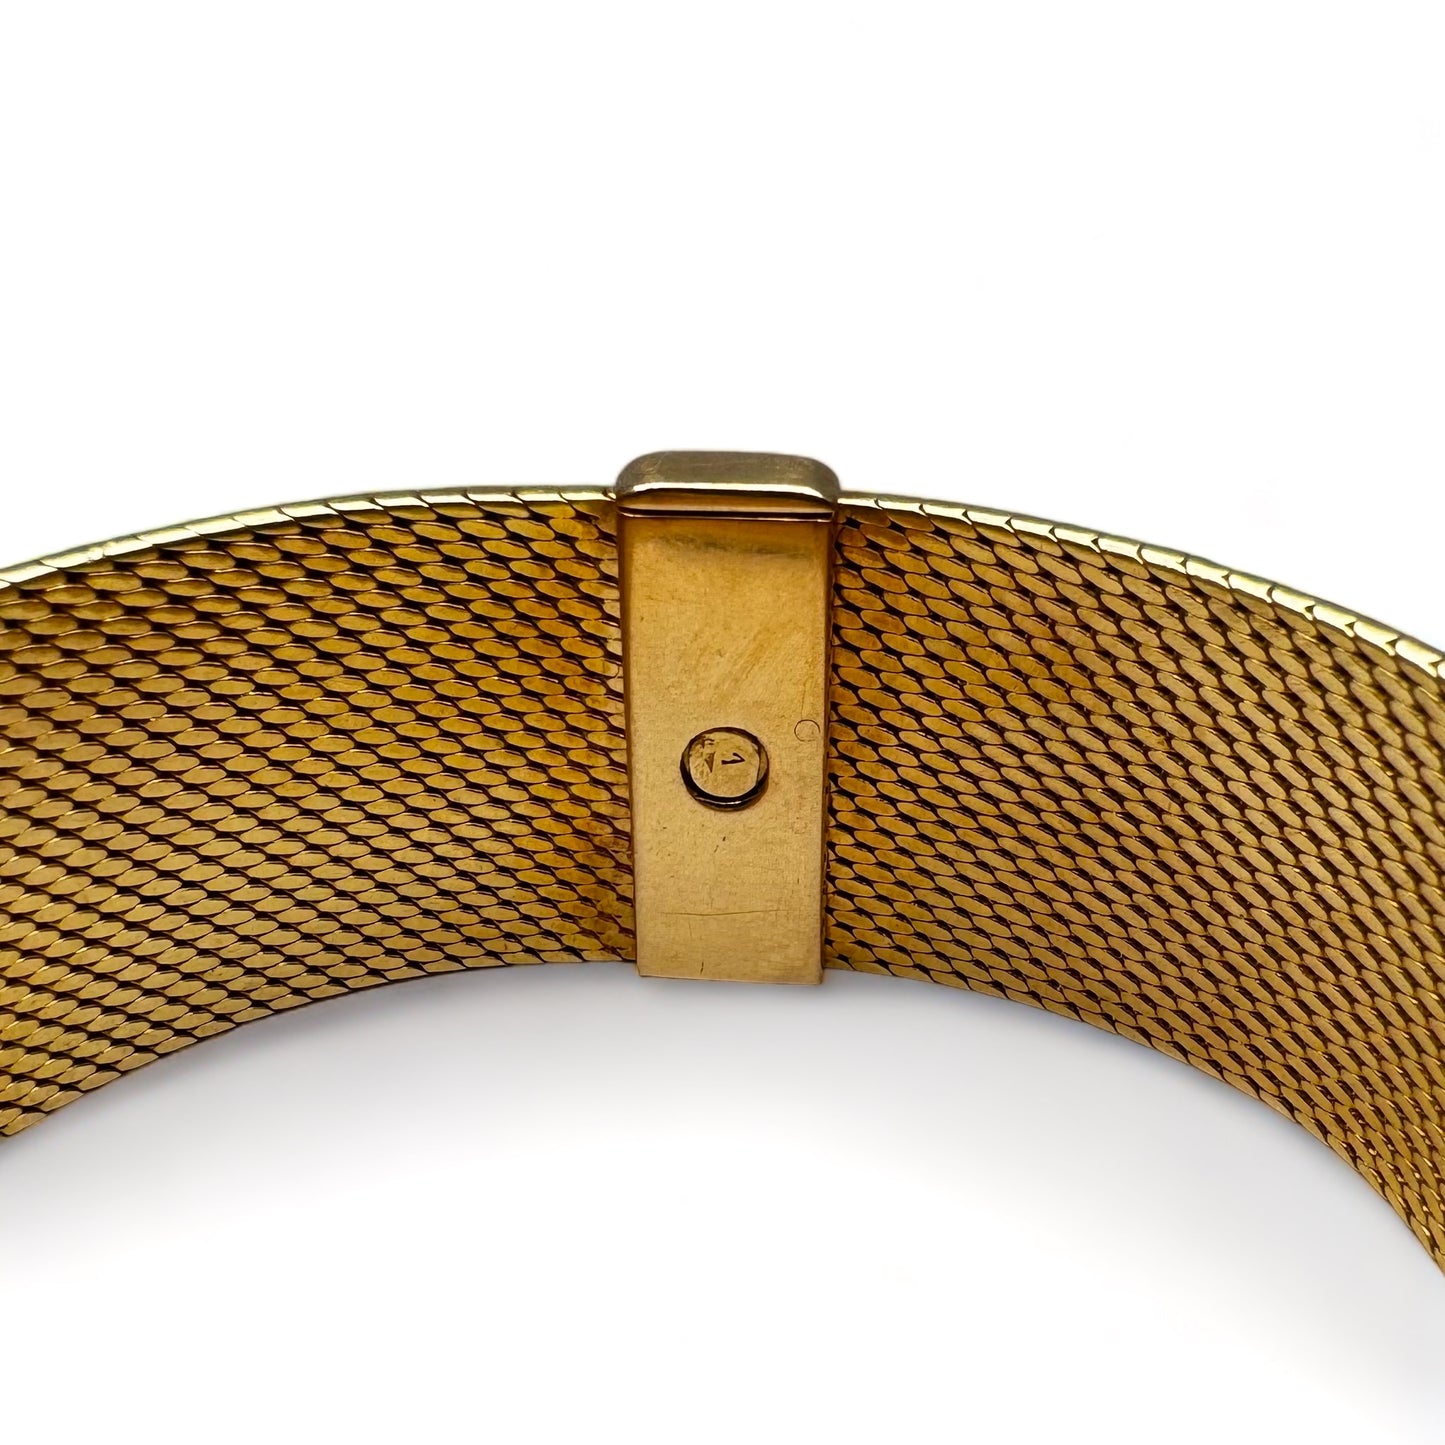 Vacheron Cosnstantin Montre bracelet de dame en or jaune pavée de diamants.